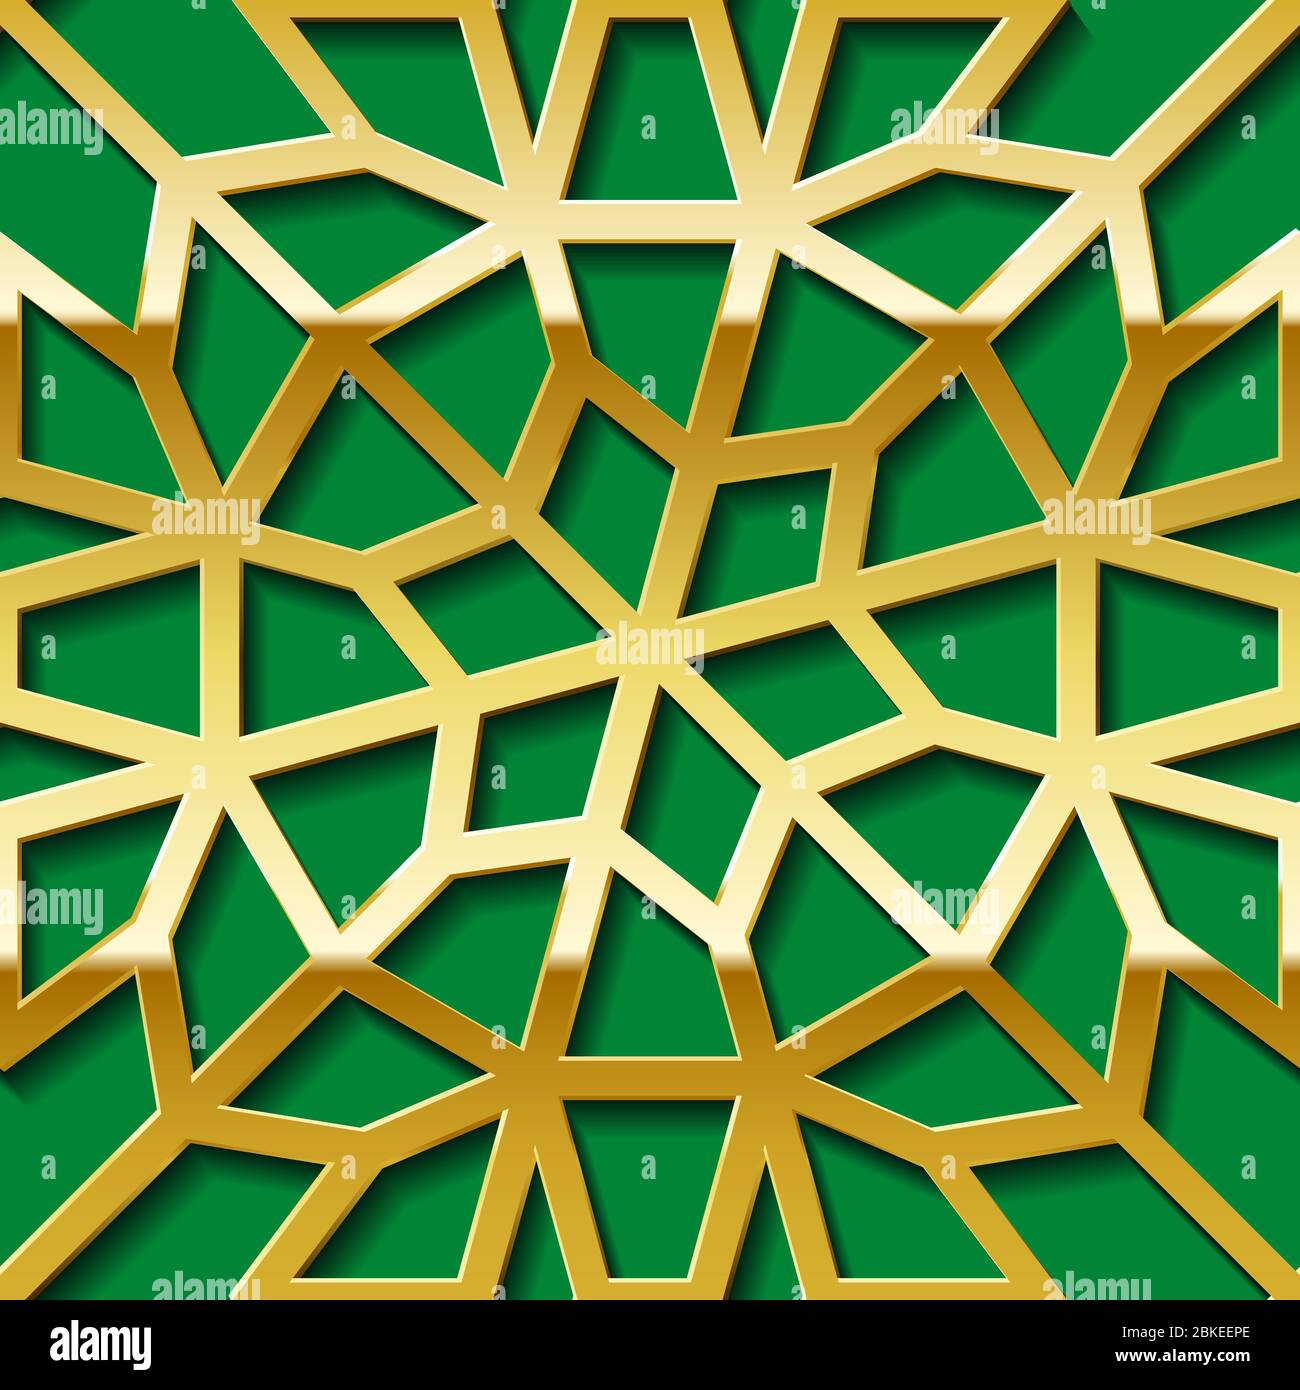 Hoa văn vàng arabesque được thể hiện trên nền tảng không gian liền mạch. Sự kết hợp này tạo thành một mẫu hoa văn không đối xứng với những họa tiết tinh tế và quan trọng trong văn hóa Hồi giáo. Trong bức ảnh liên quan, bạn sẽ thấy những trang trí và hoa văn đầy ấn tượng này.